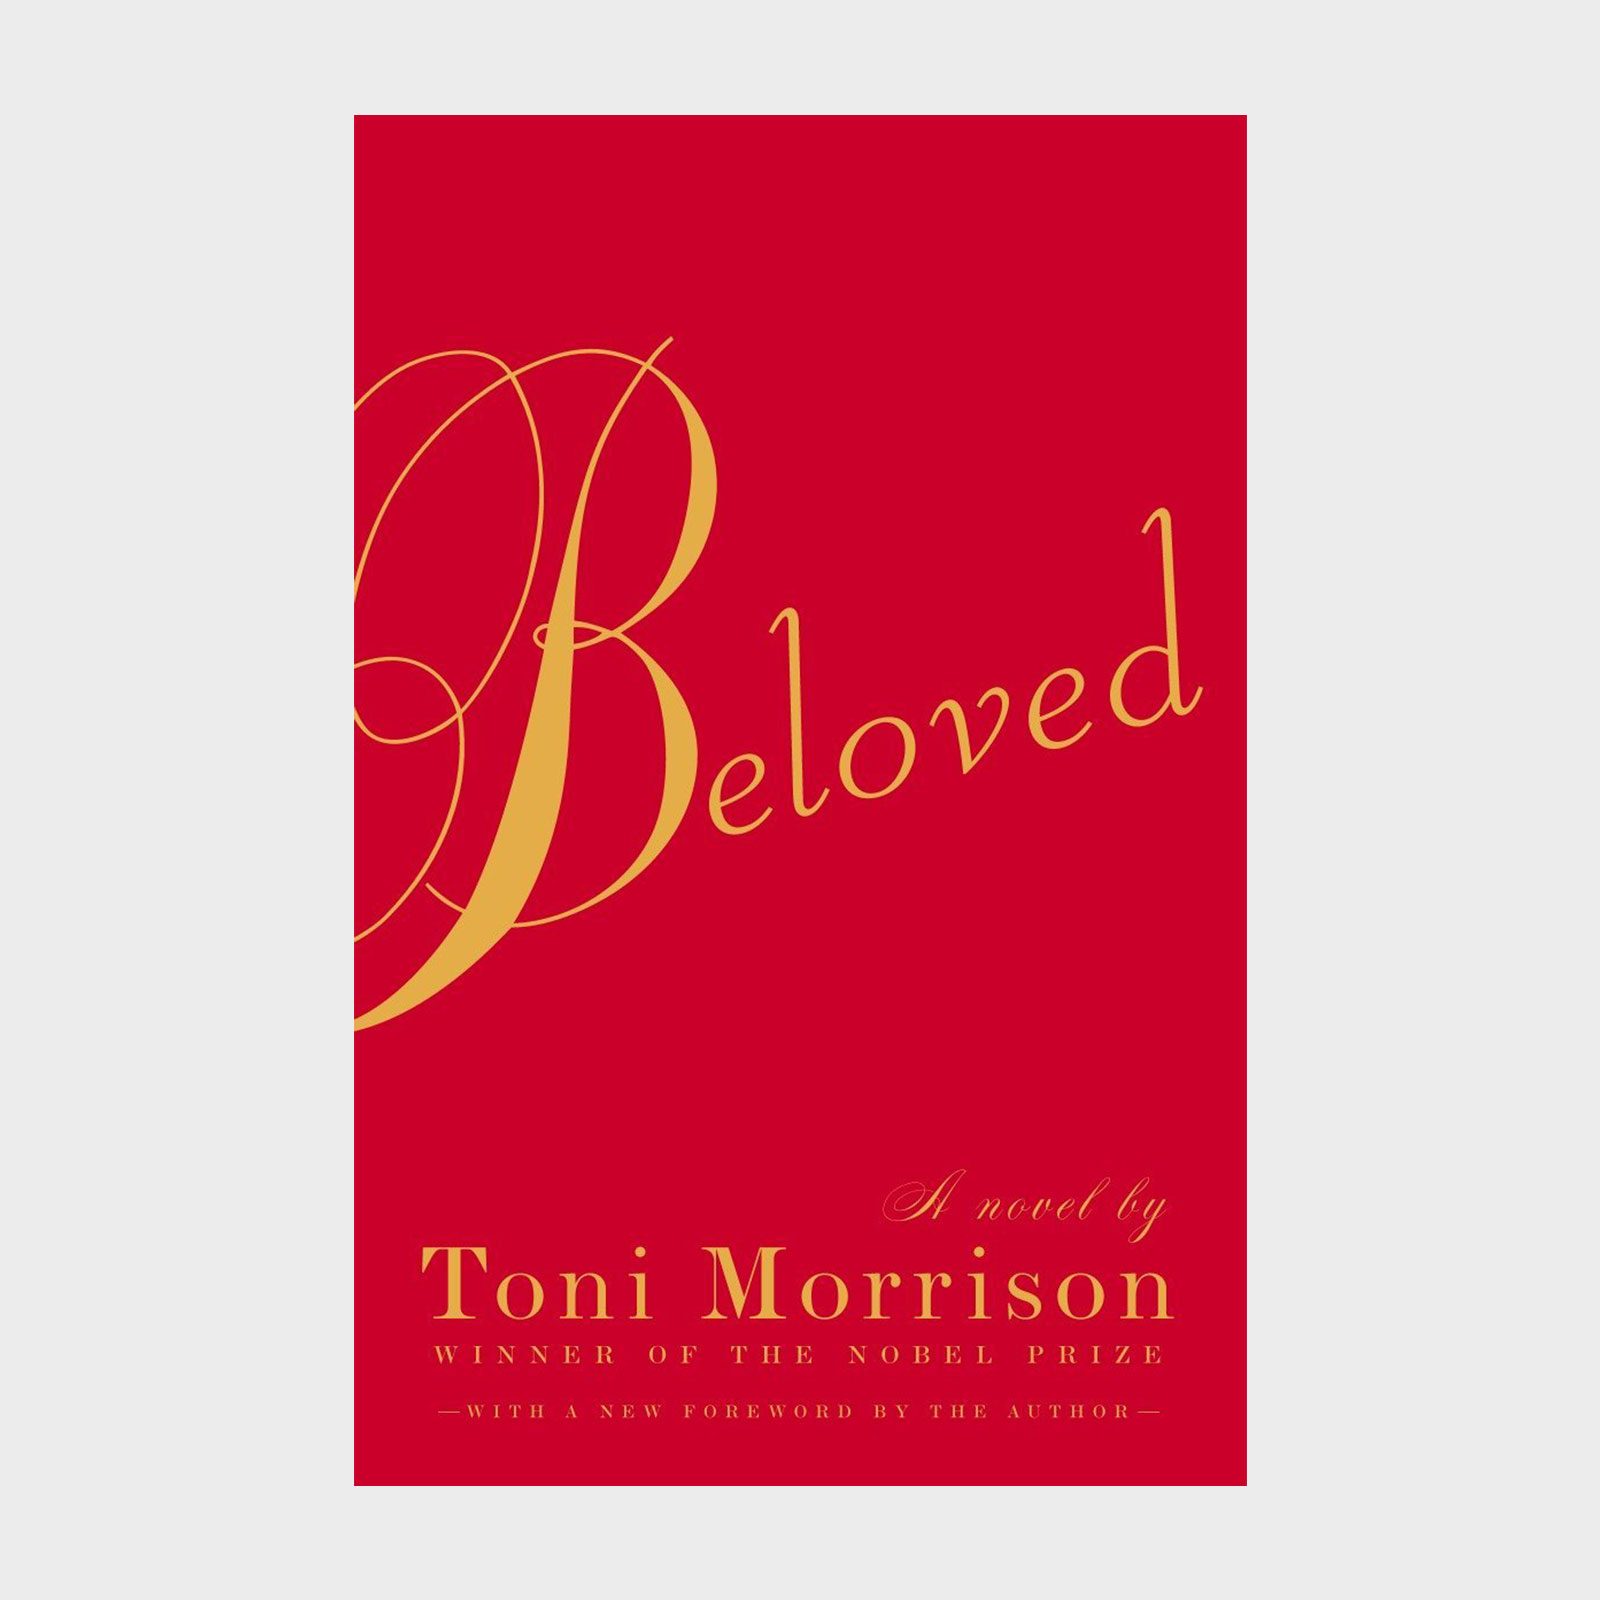 <a href="https://www.amazon.com/Beloved-Toni-Morrison/dp/1400033411/">Beloved</a>